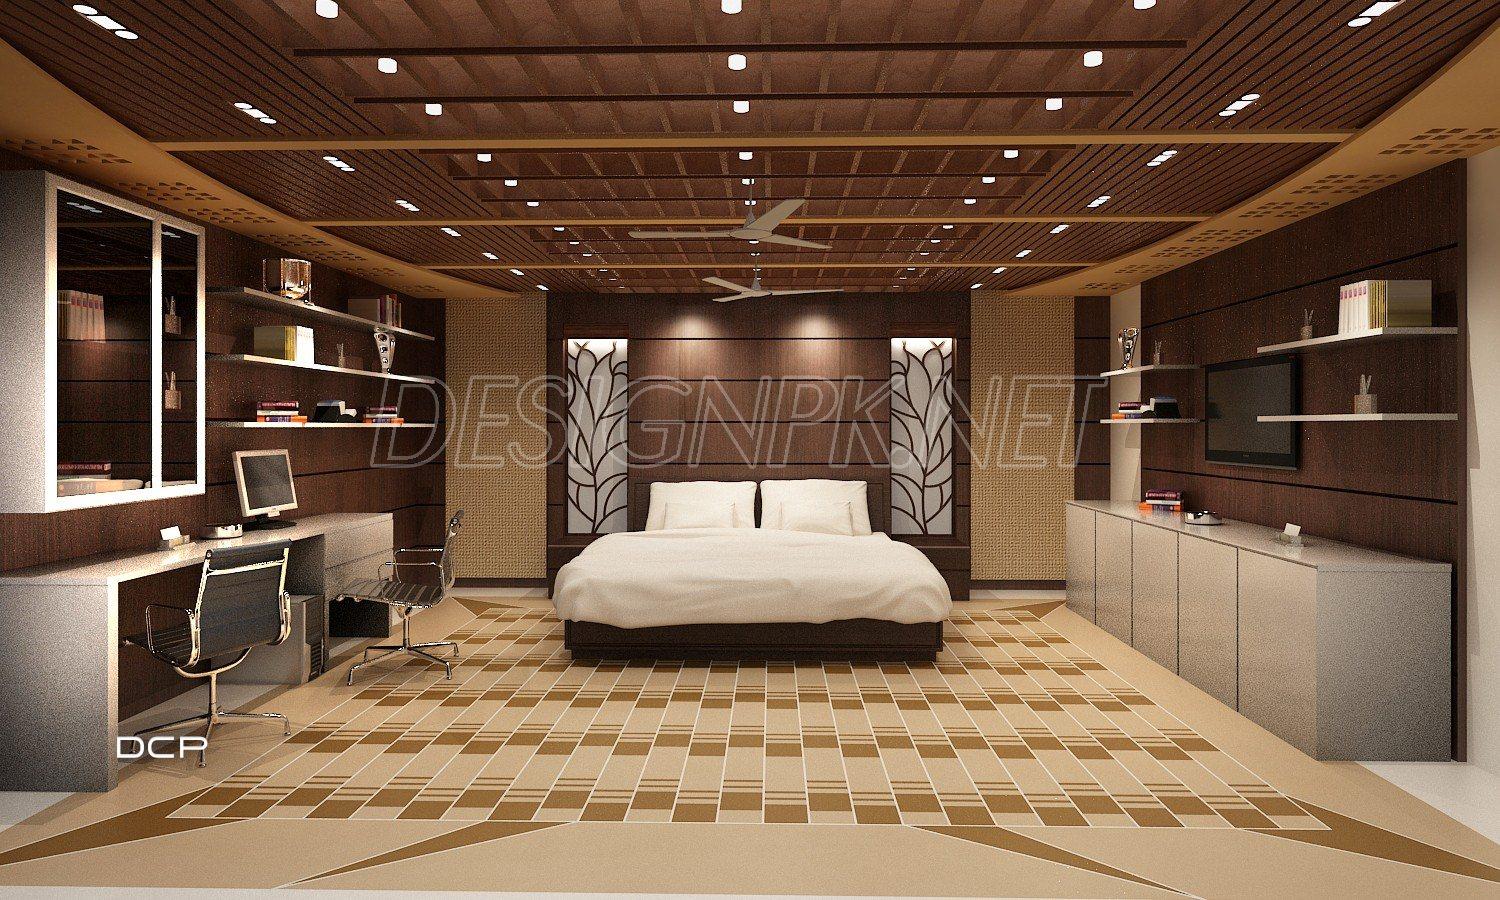 Bedroom-interior-design-dcp-pakistan